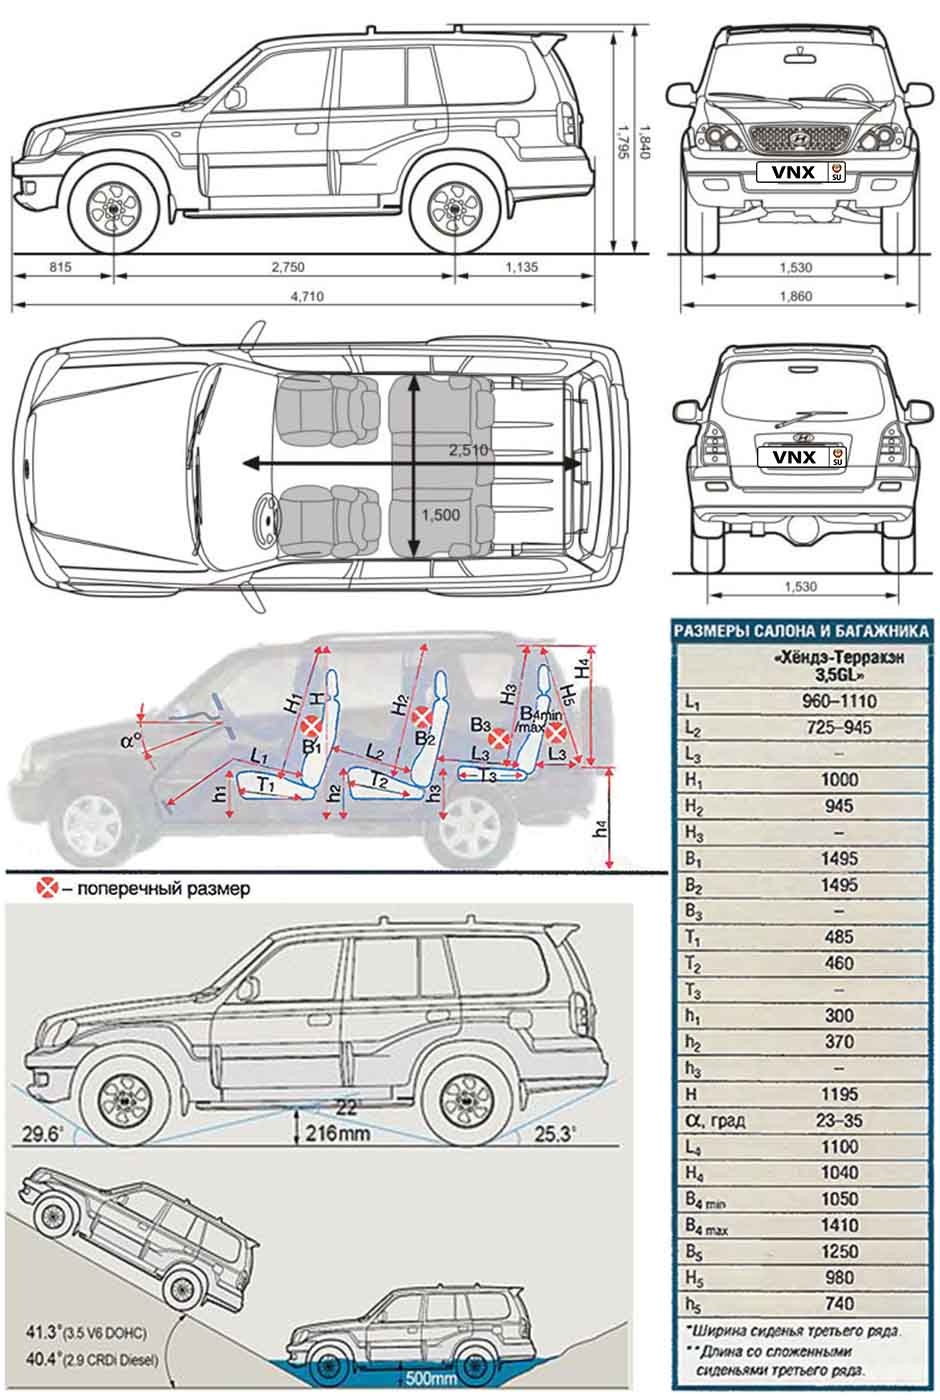 Габаритные размеры Хундай Терракан 2001-2007 (dimensions Hyundai Terracan HP)